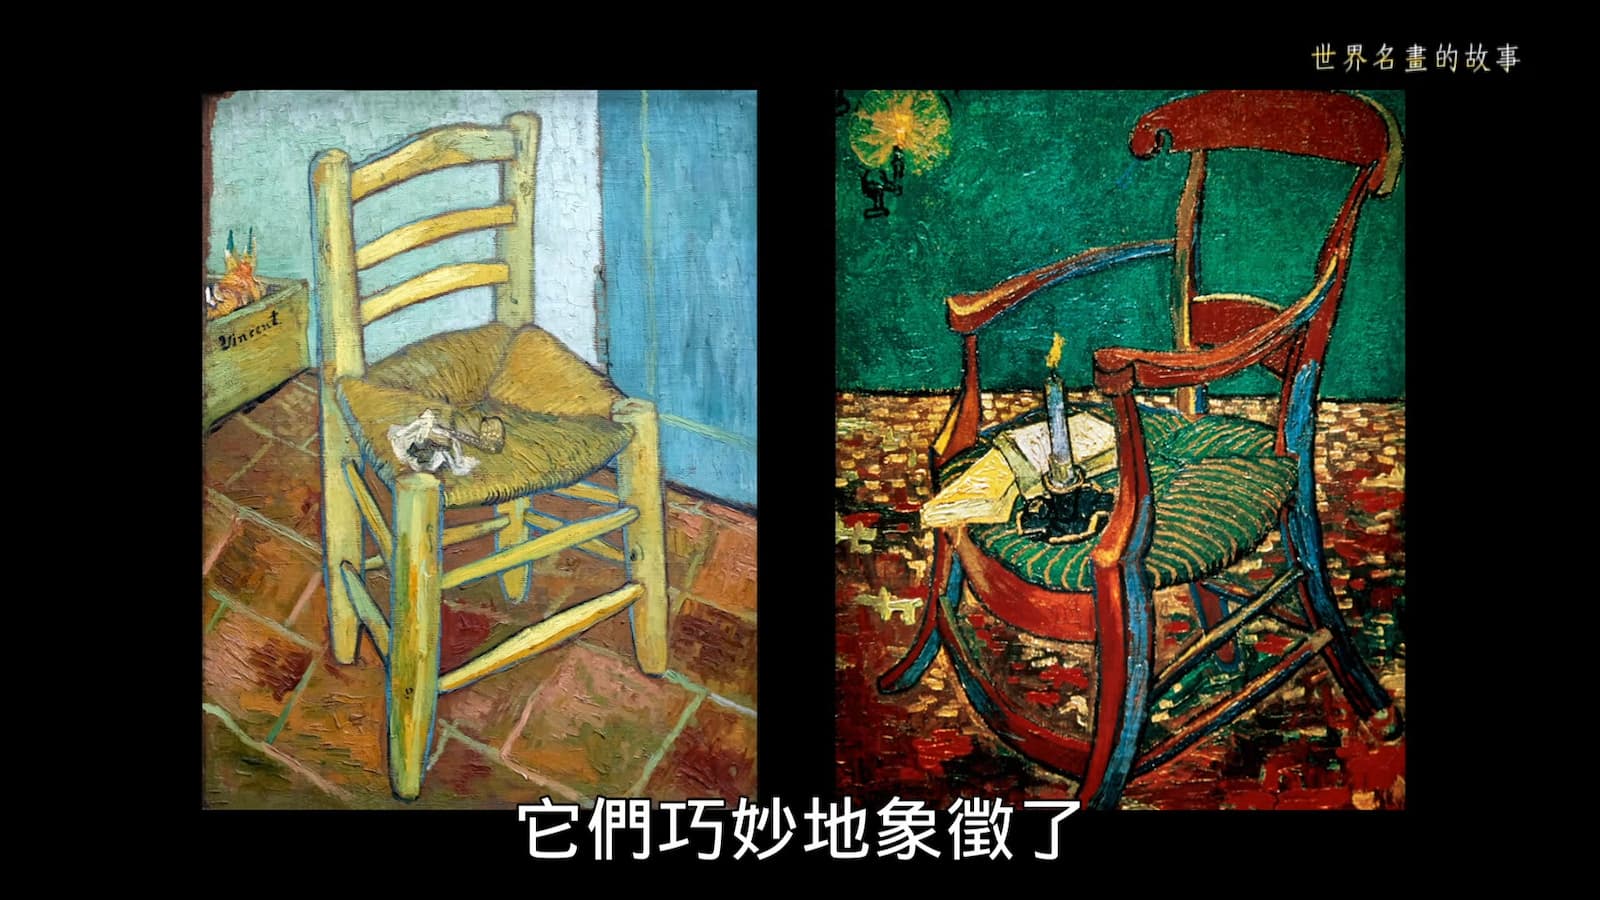 圖左為梵谷的椅字，圖右為高更的椅子，從椅子就可以看到兩人個性迥然不同，相處越久摩擦越多，最終導致割耳悲劇。劇照／《世界名畫的故事》
